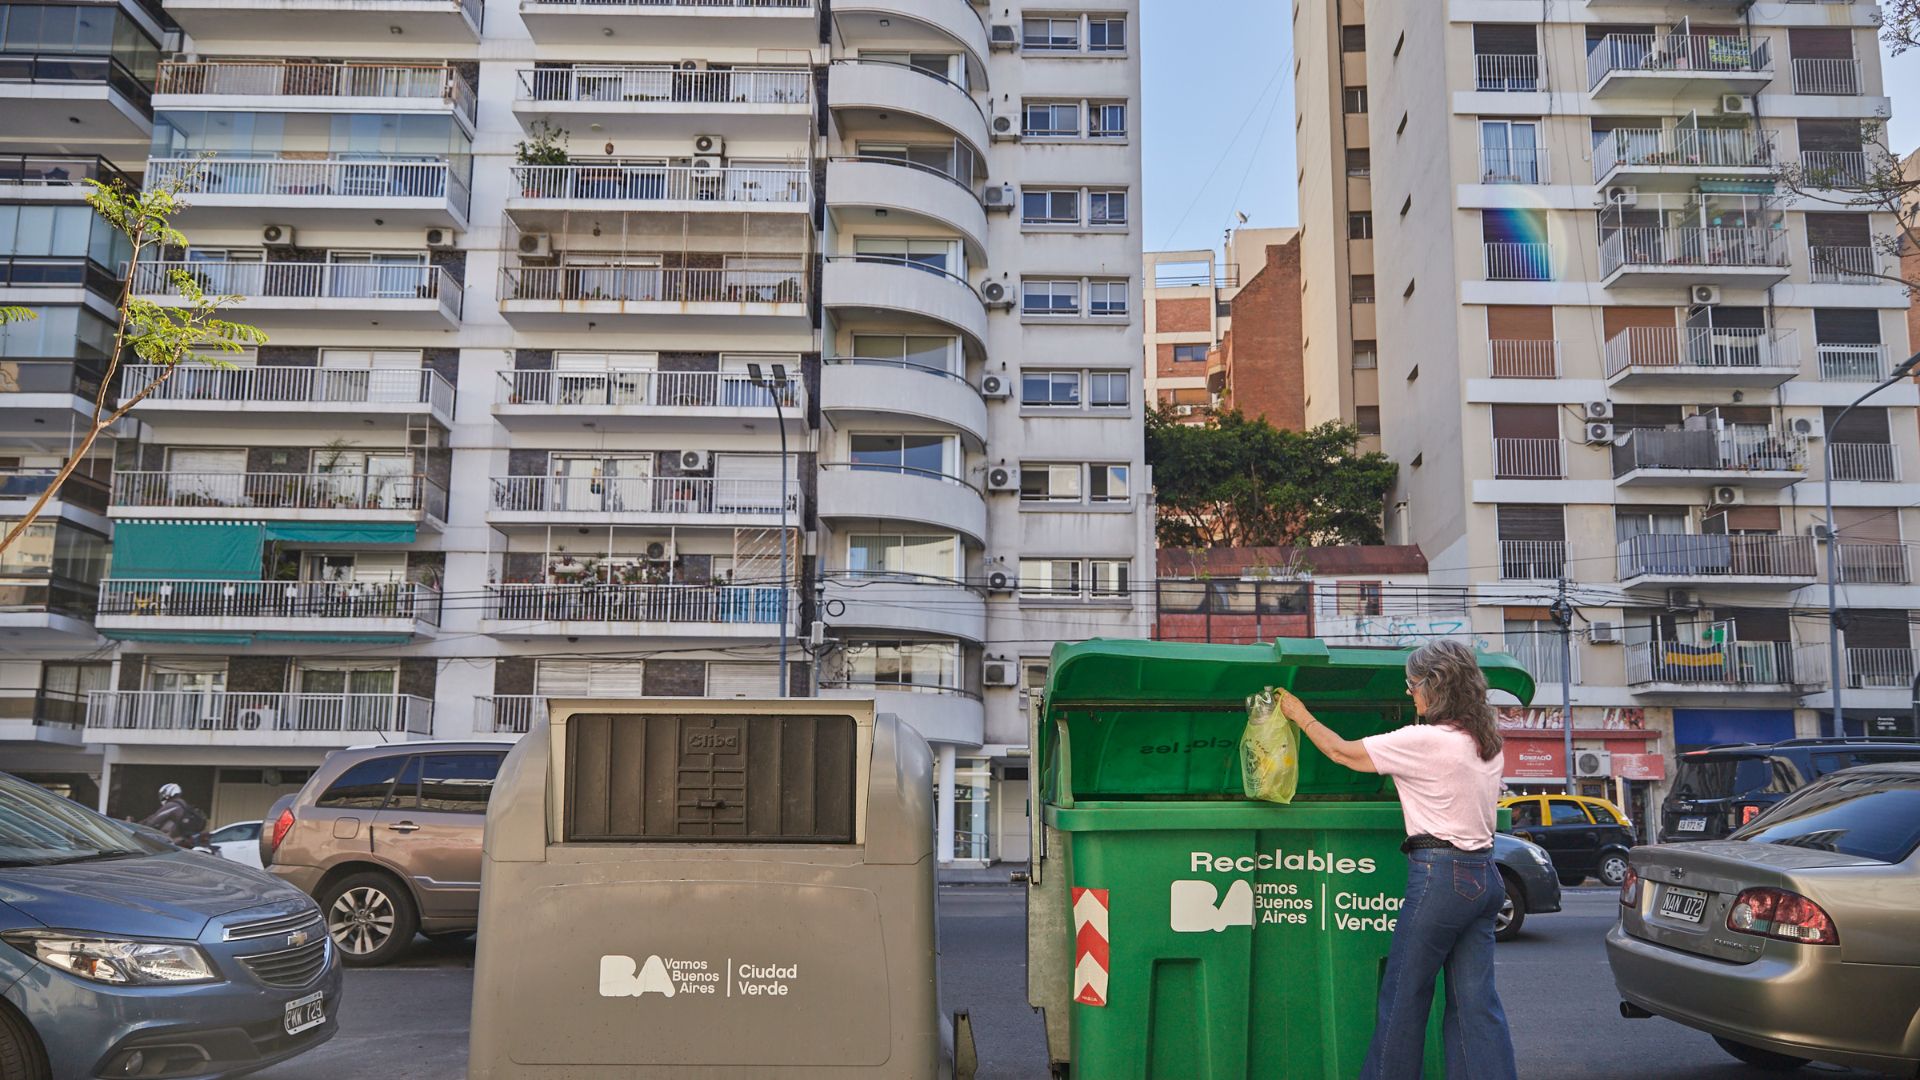 Higiene urbana: cómo se comportan los habitantes de la Ciudad de Buenos Aires a la hora de separar los residuos